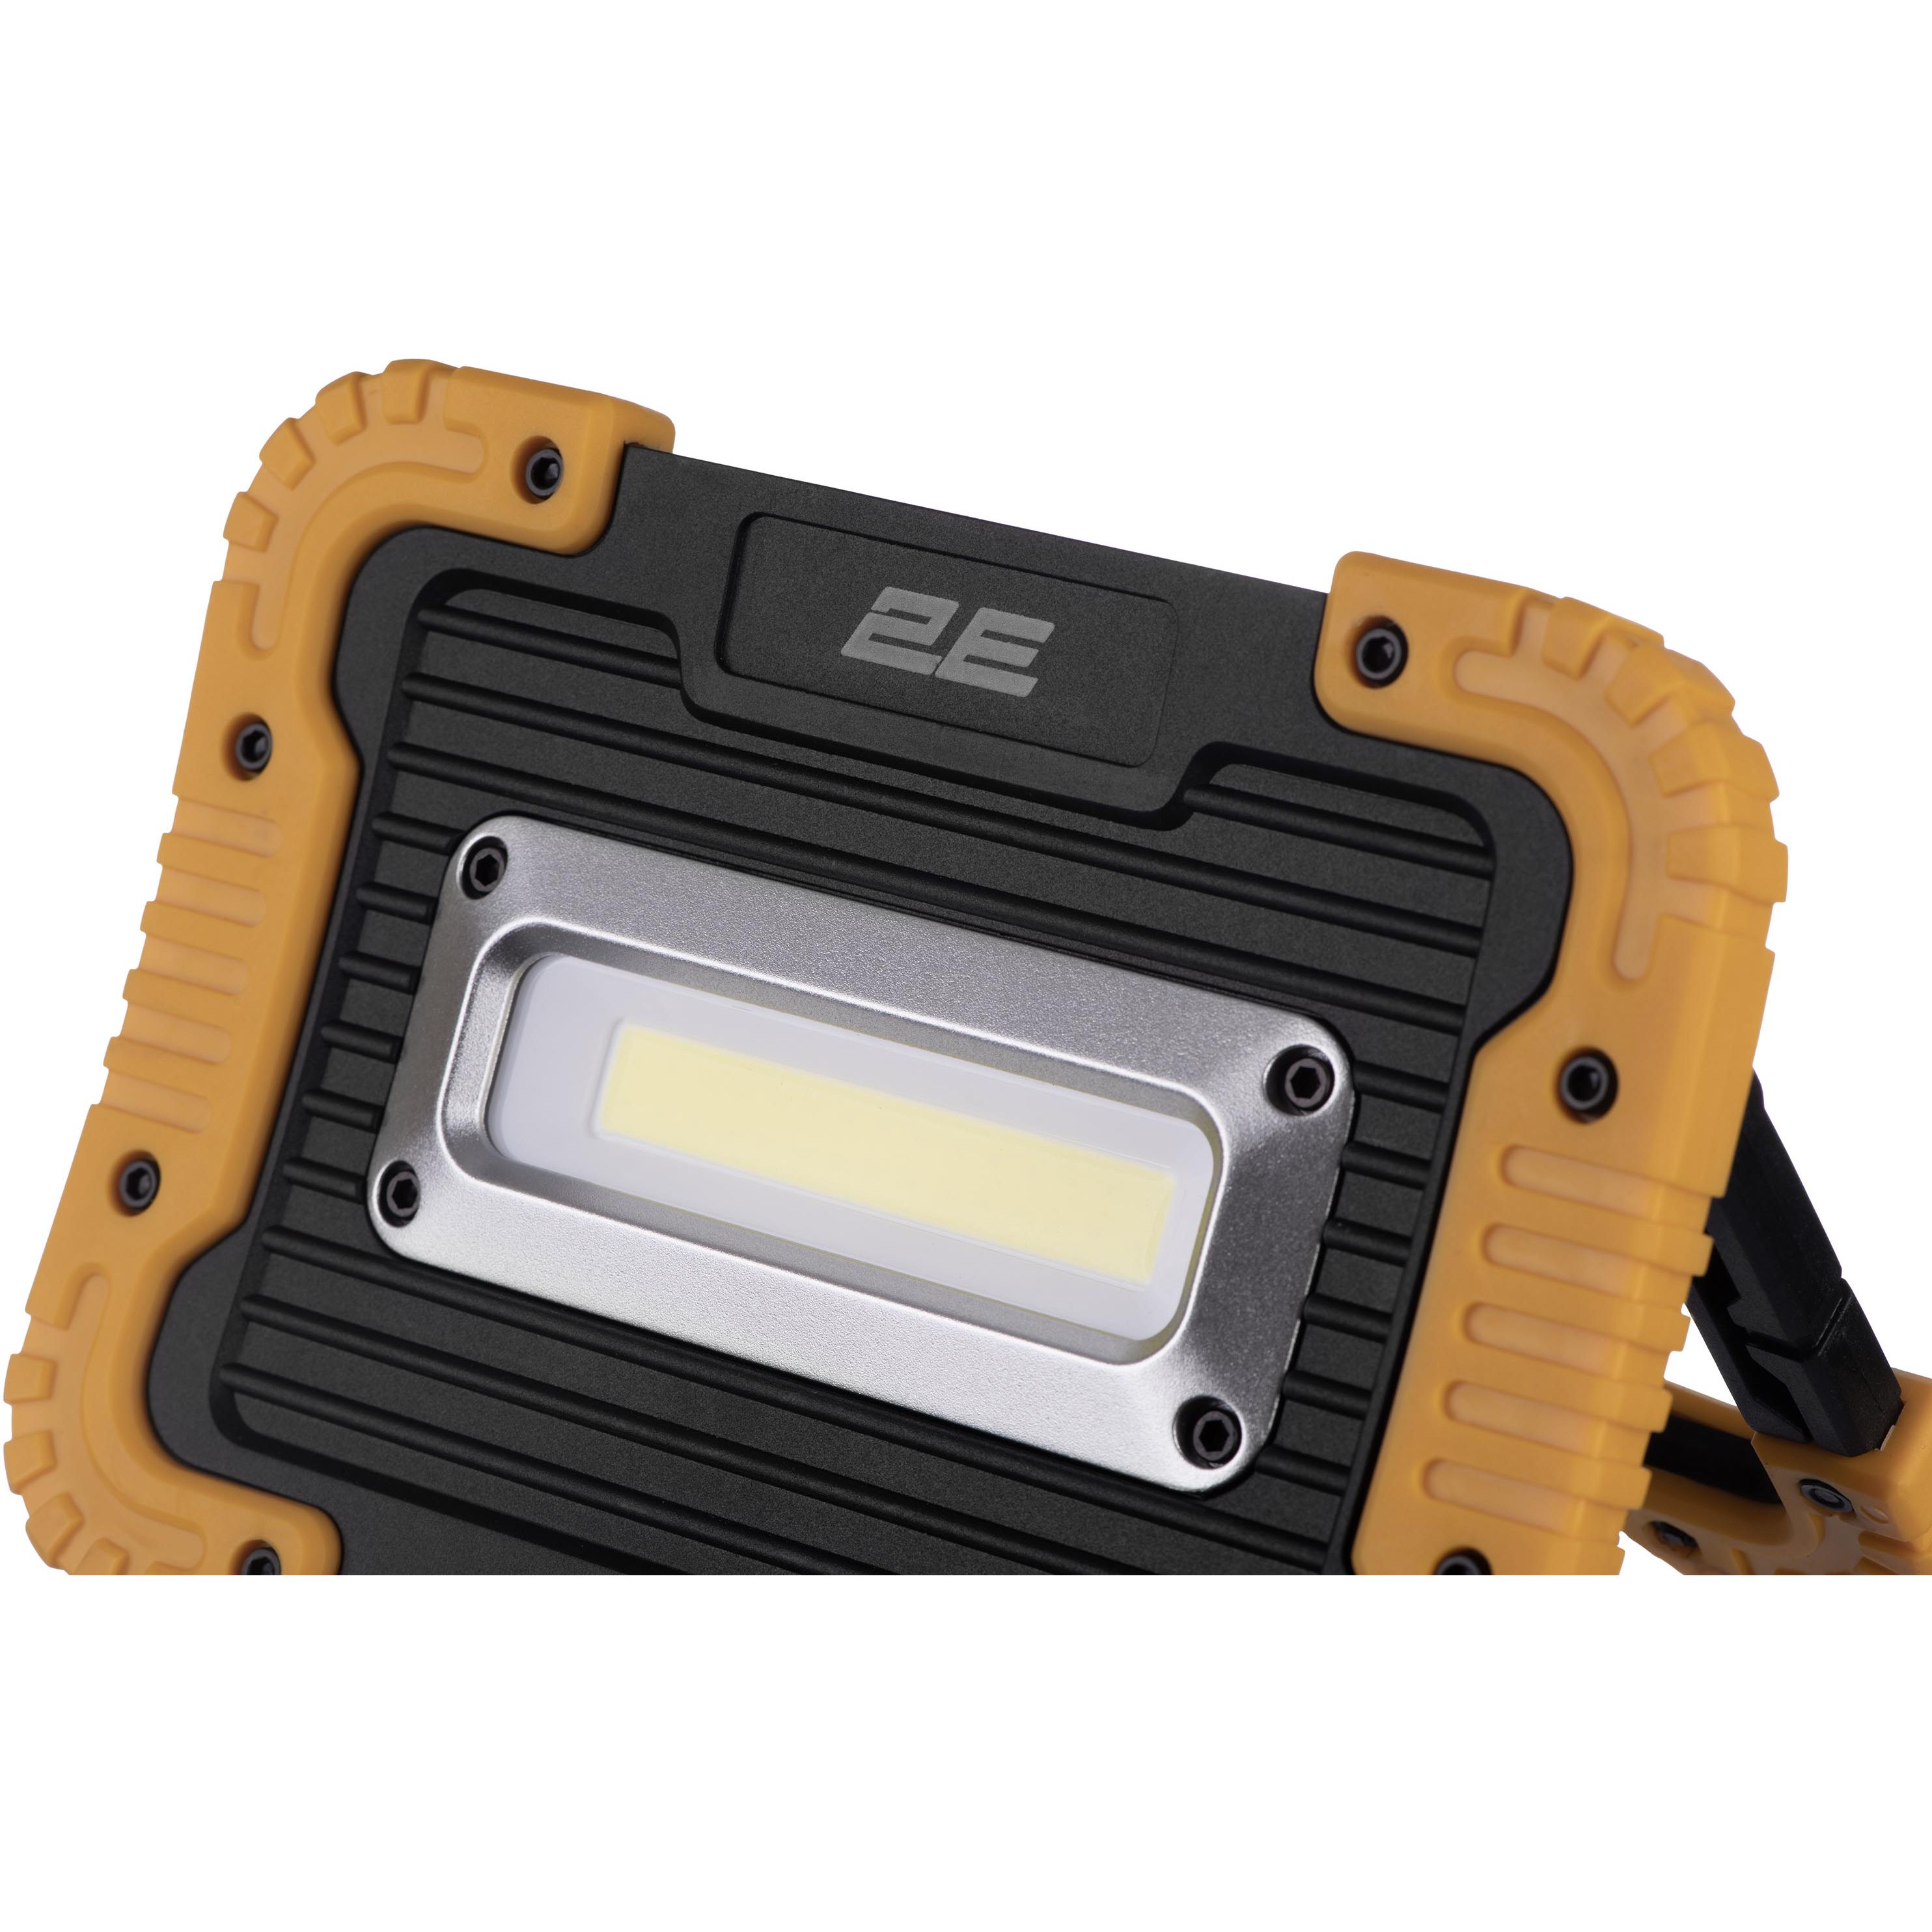 Прожектор аккумуляторный 2E Comfort Home 4400 мА/ч 3 функции освещения (2E-WLBL1844) - фото 7